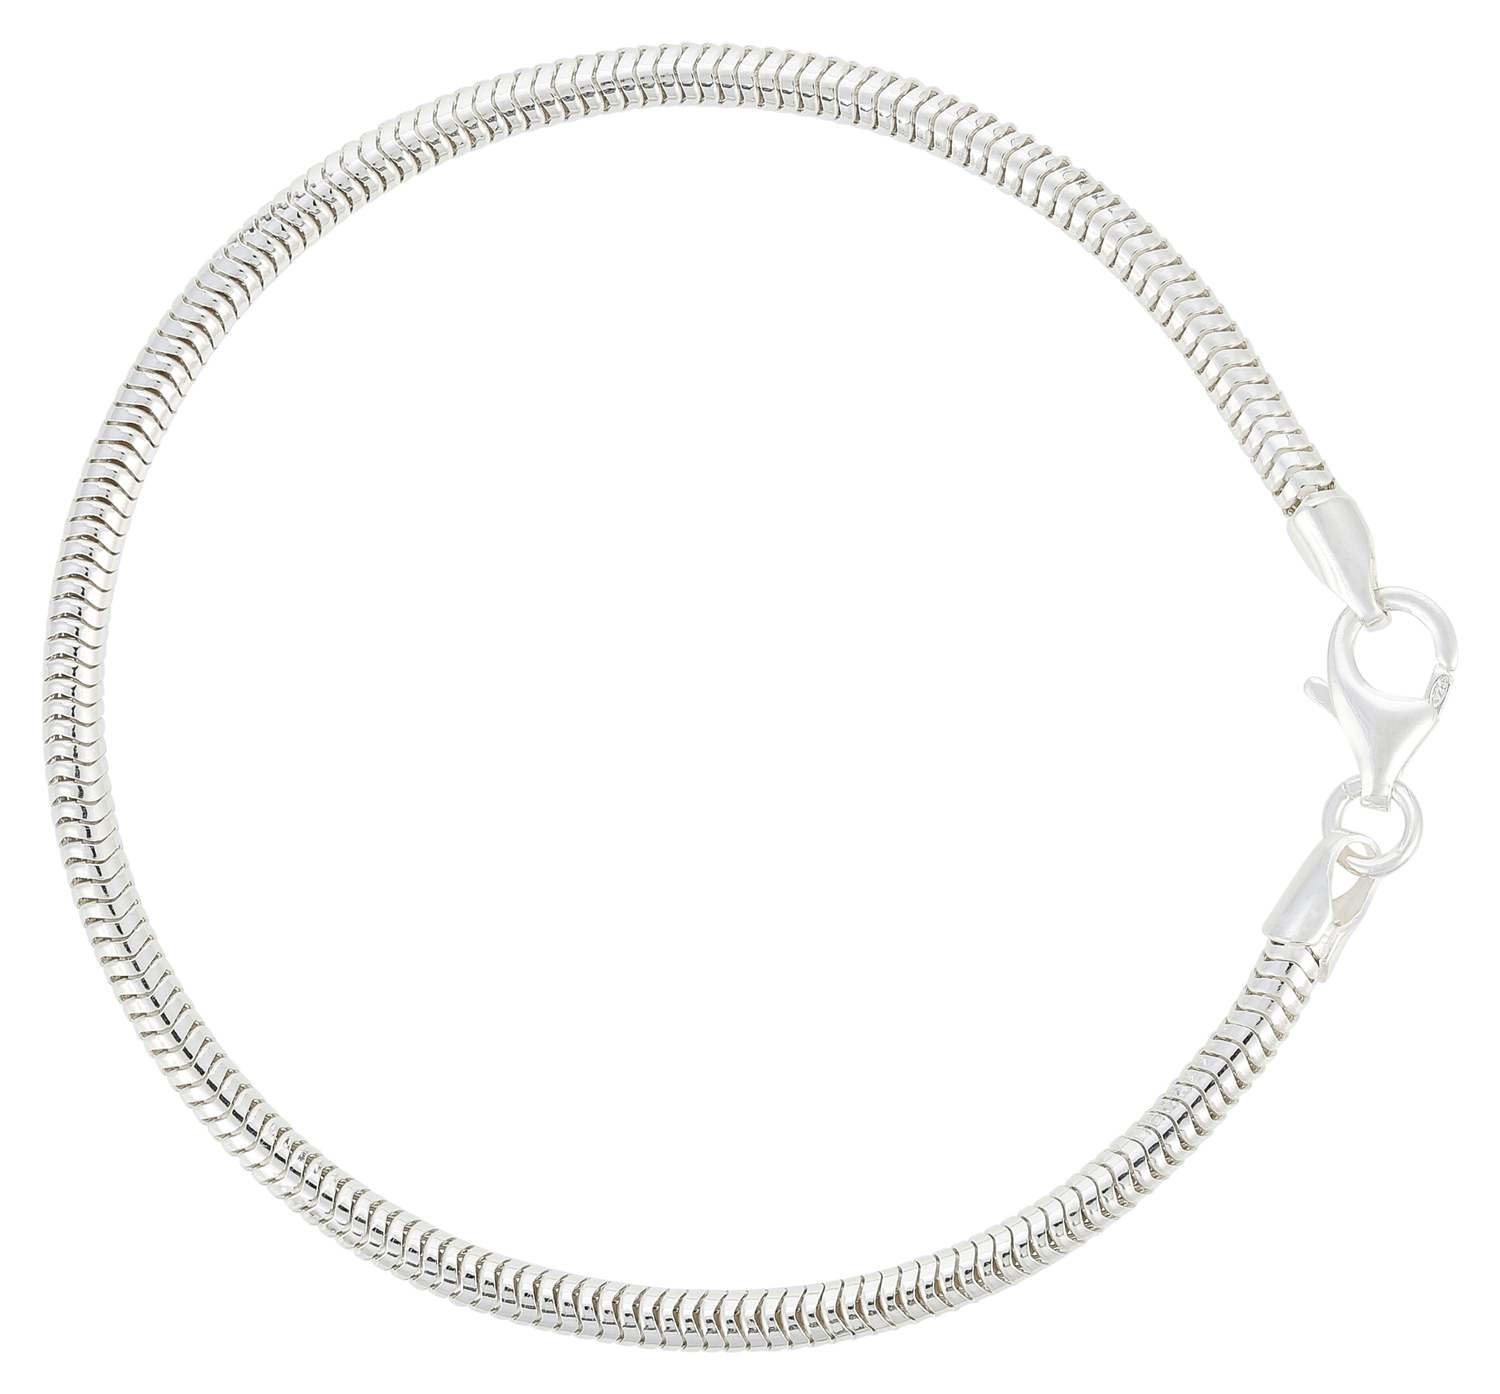 Bracelet - Beautiful Silver